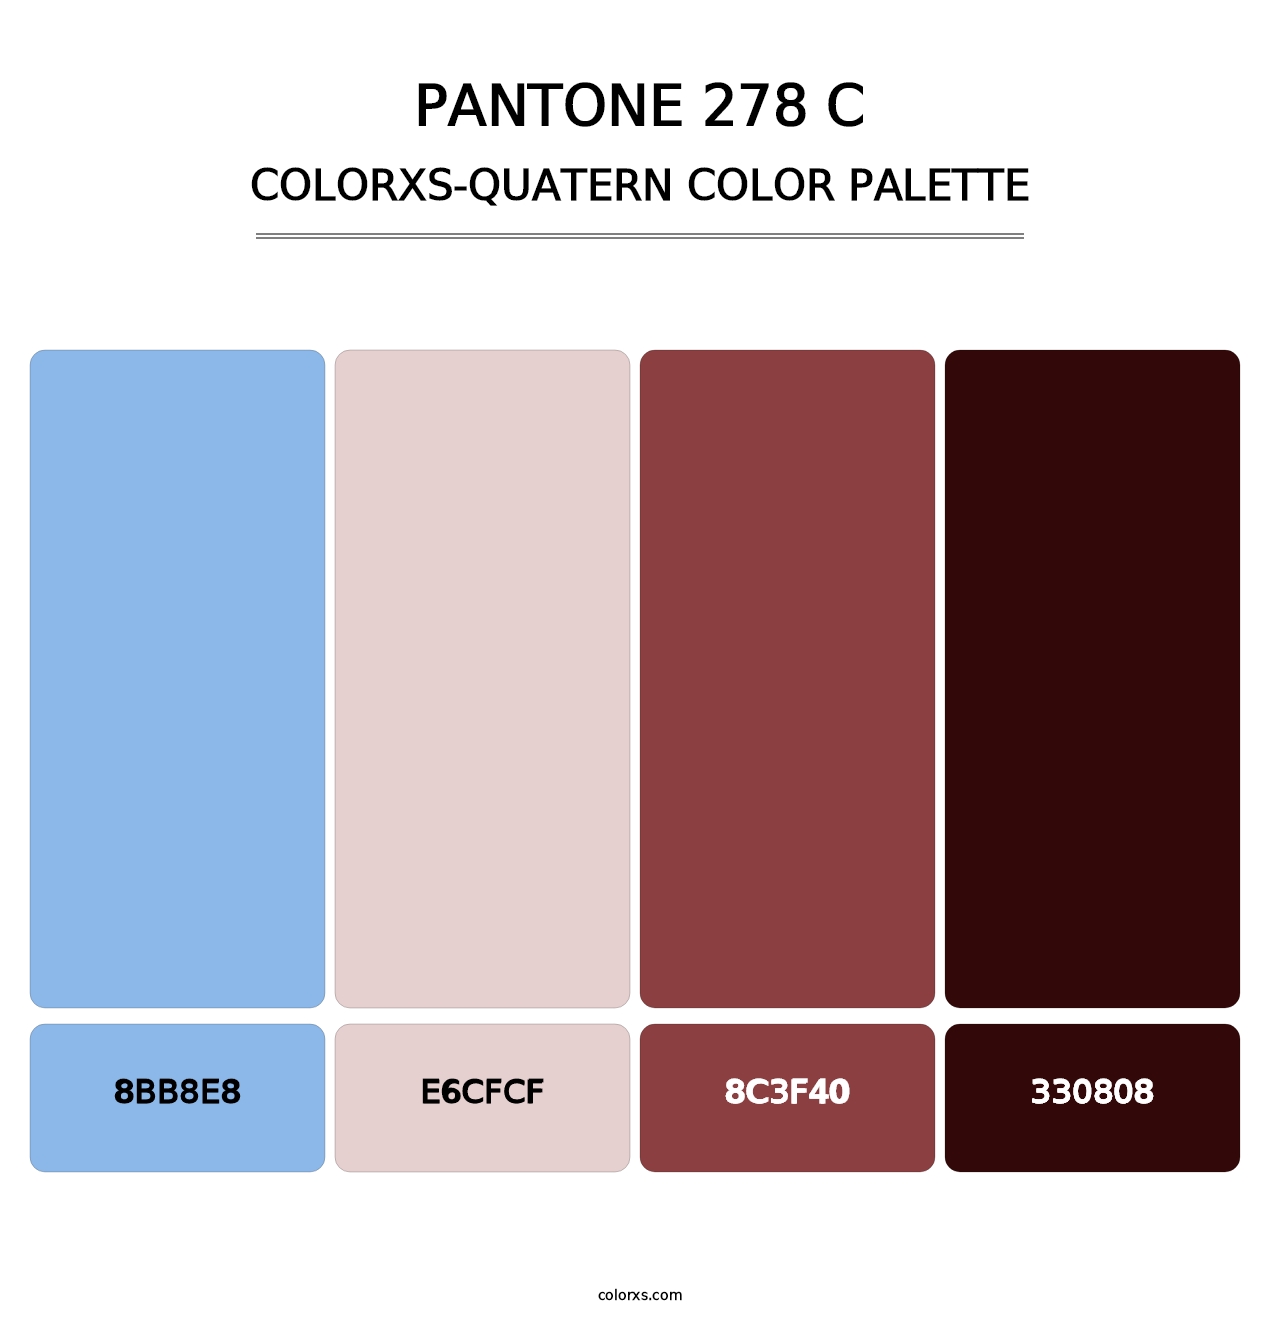 PANTONE 278 C - Colorxs Quatern Palette